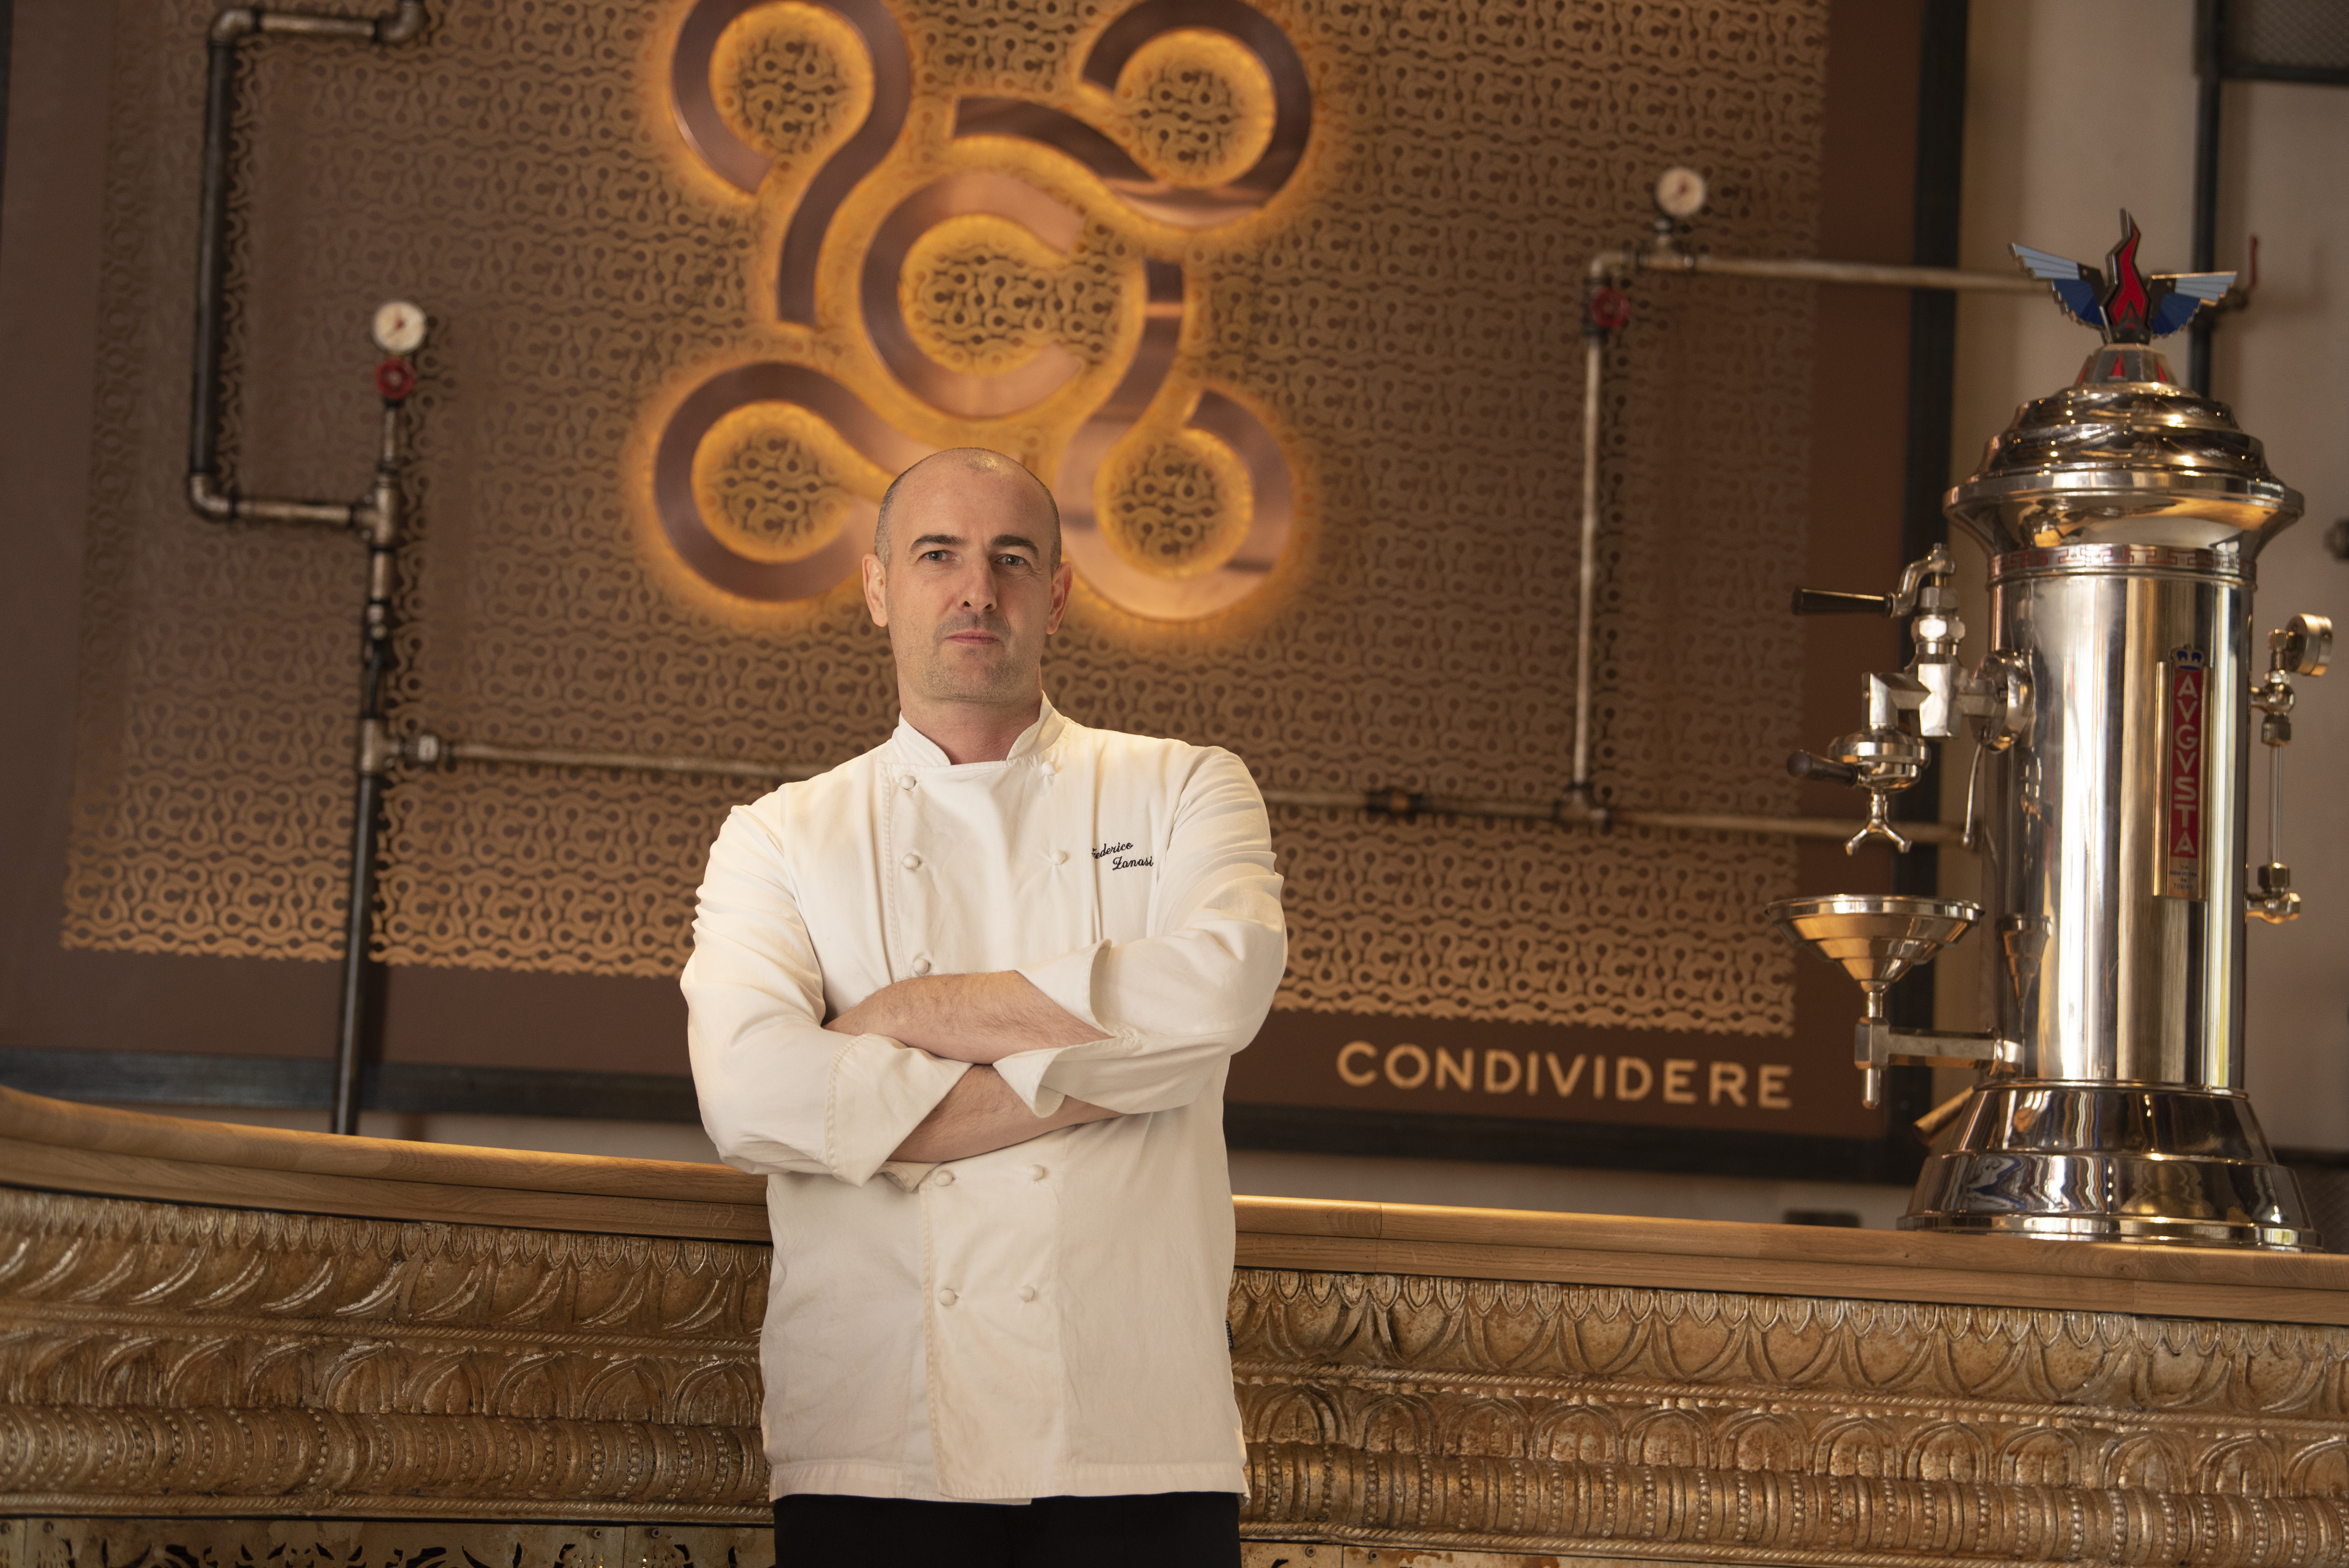 Restauracja Condividere uhonorowana gwiazdką Michelin